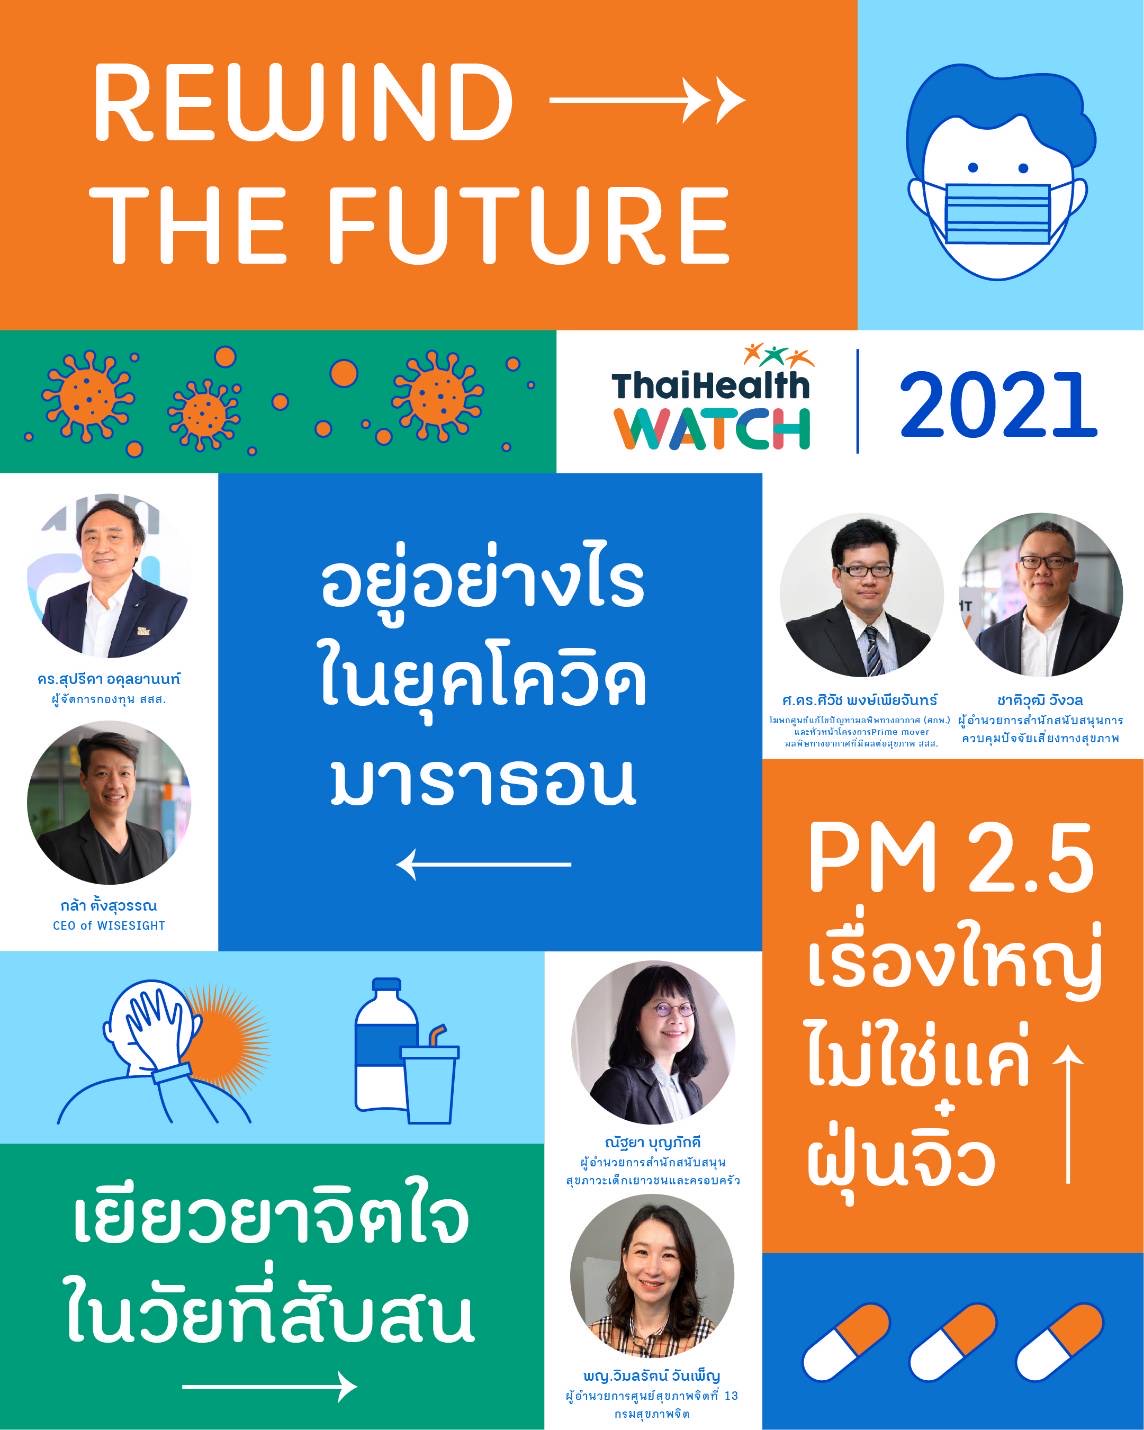 สสส.ชวนประชาชนร่วมจับตาทิศทางสุขภาพคนไทย ปี 2564  thaihealth